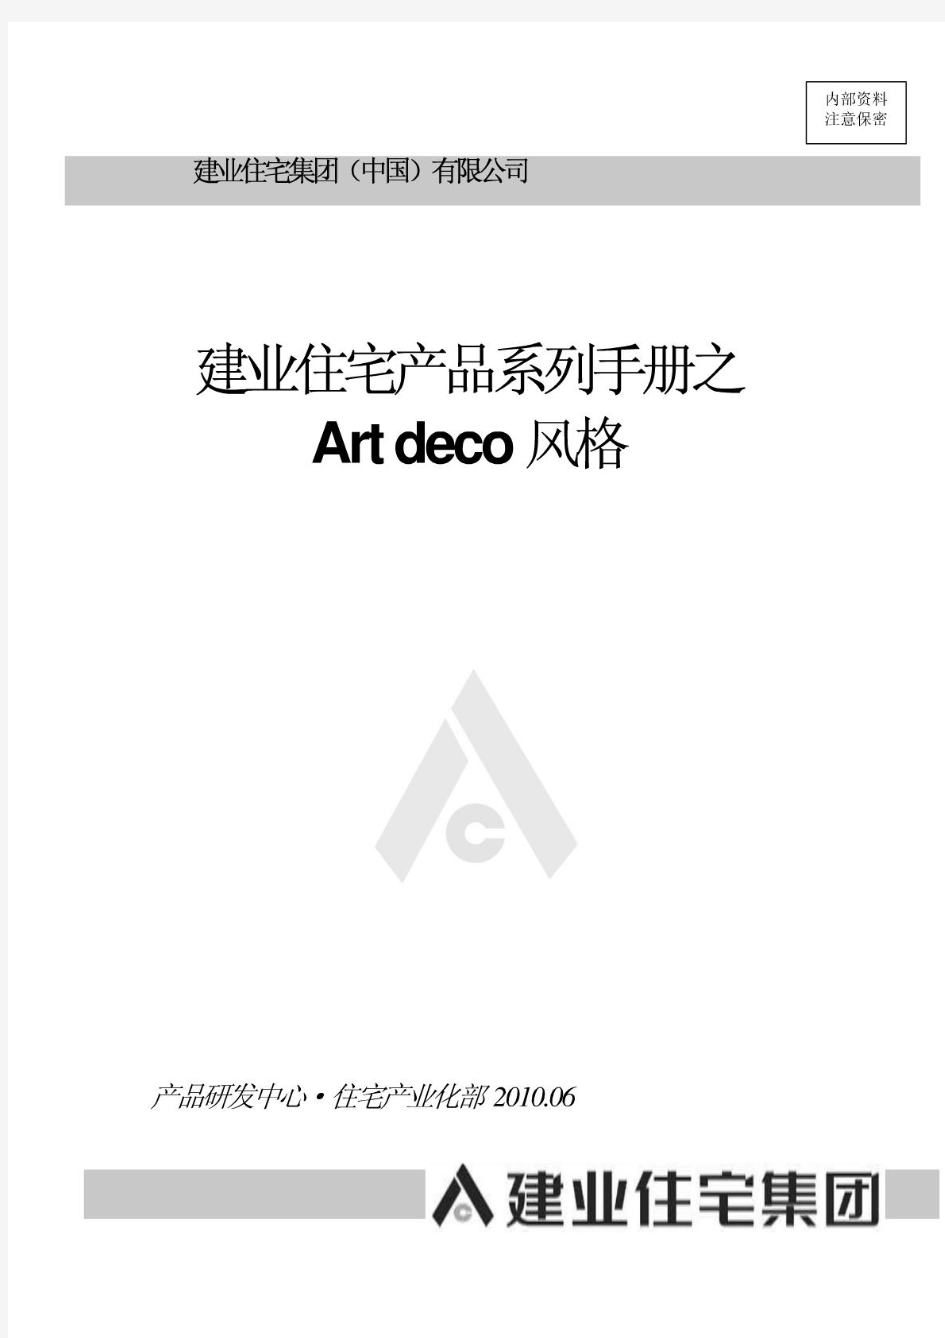 建业住宅产品系列手册artdeco风格